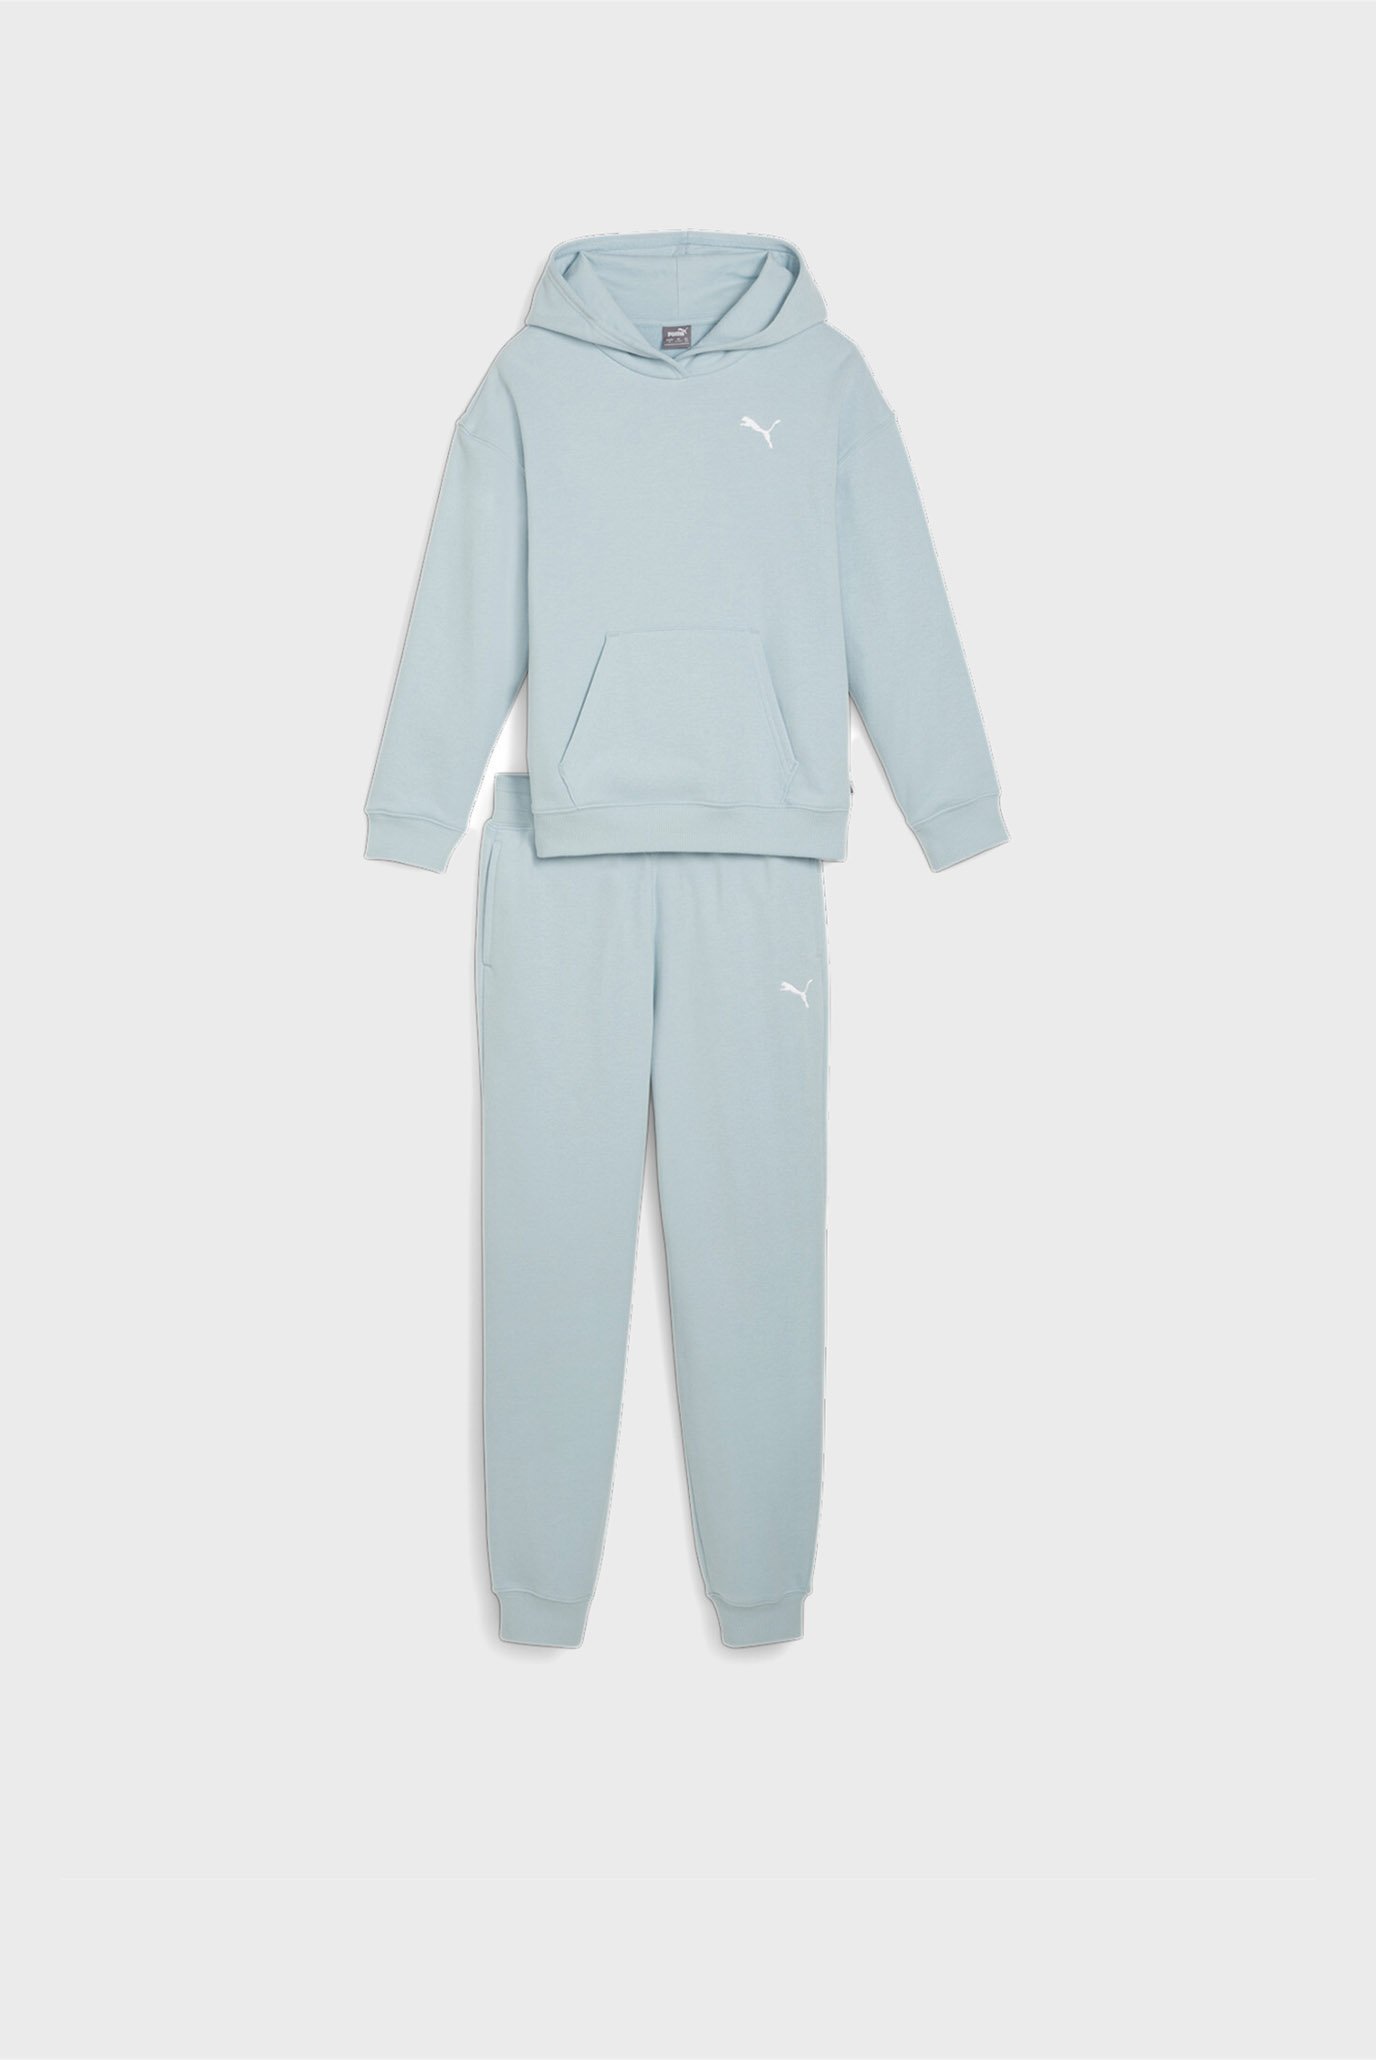 Дитячий блакитний спортивний костюм (худі, штани) Girls' Loungewear Suit 1